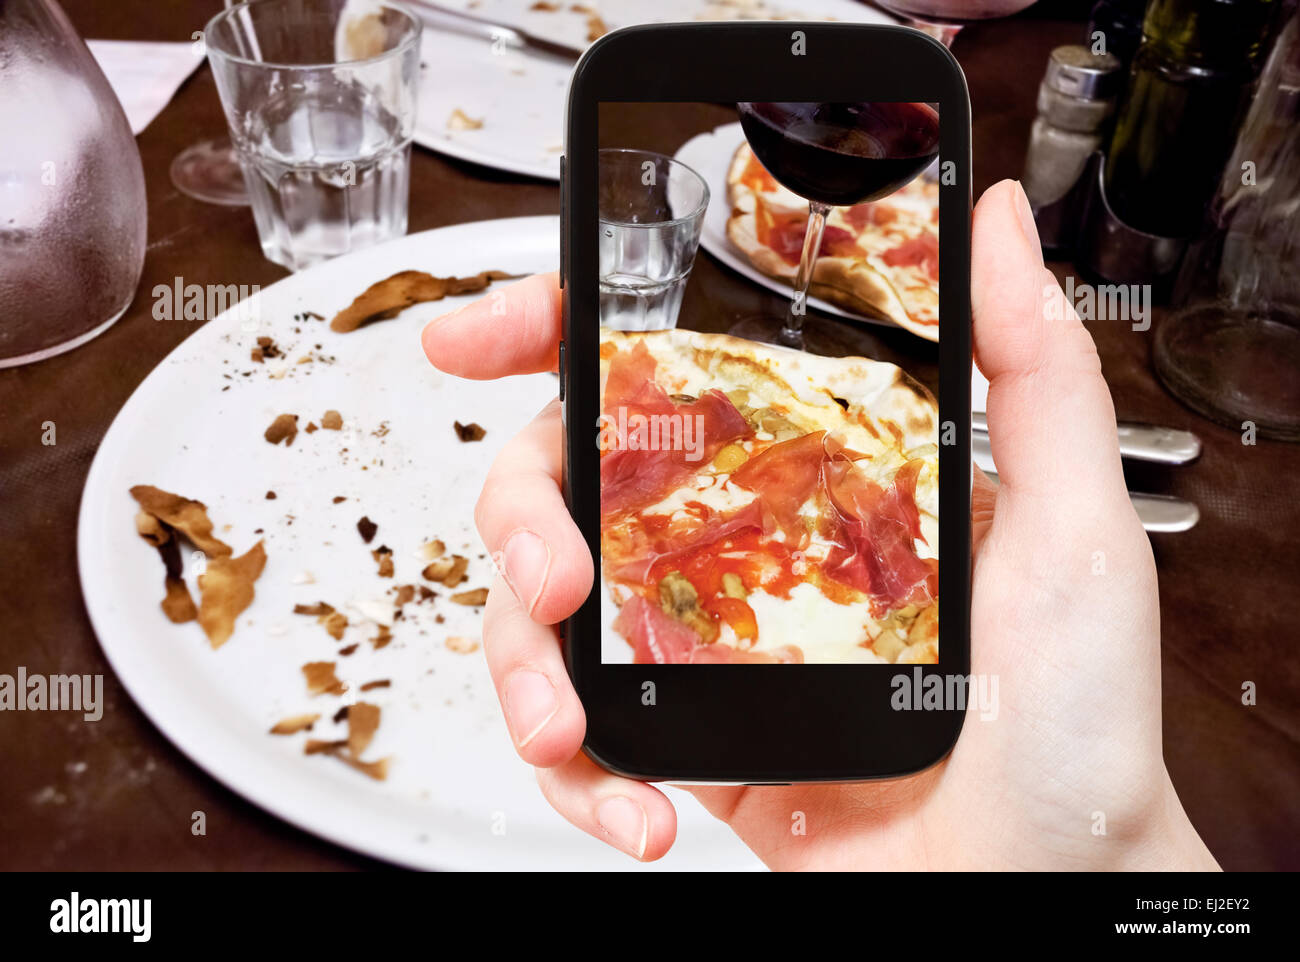 Fotografieren Food-Konzept - Tourist nimmt Bild der italienischen Pizza mit Parmaschinken und Glas Rotwein auf Smartphone, Italien Stockfoto